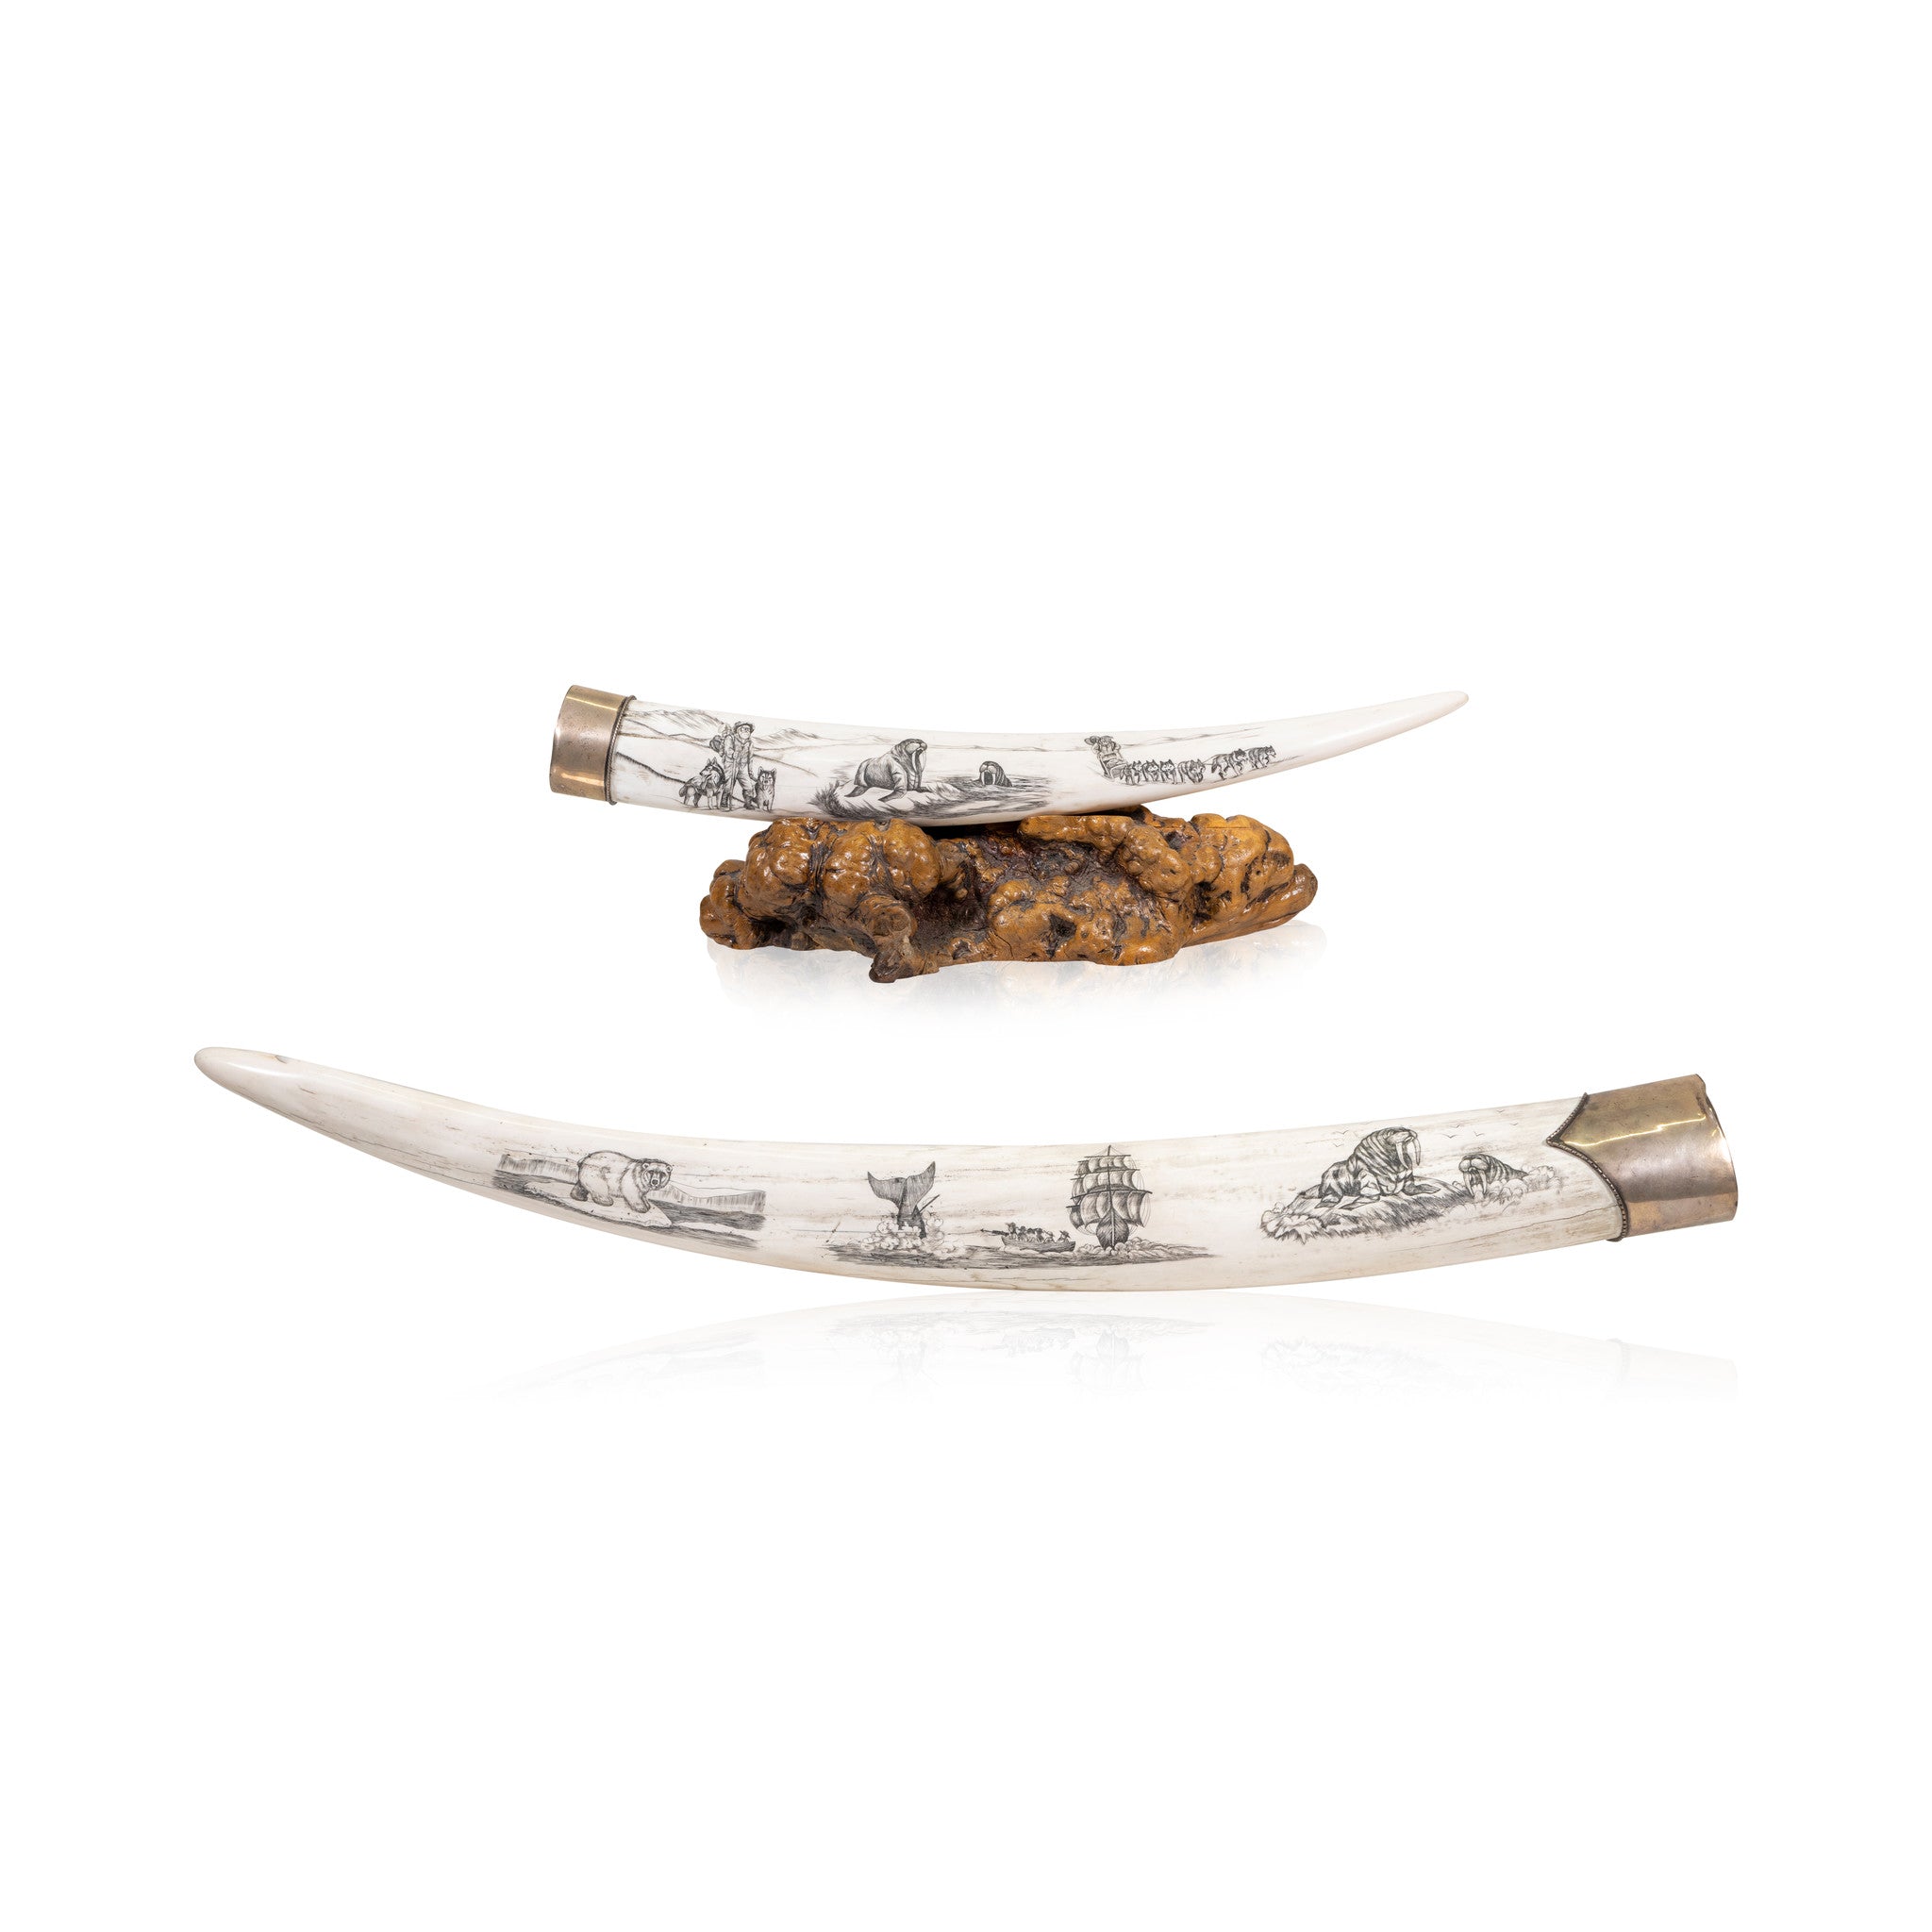 Scrimshawed Walrus Tusks, Native, Carving, Ivory